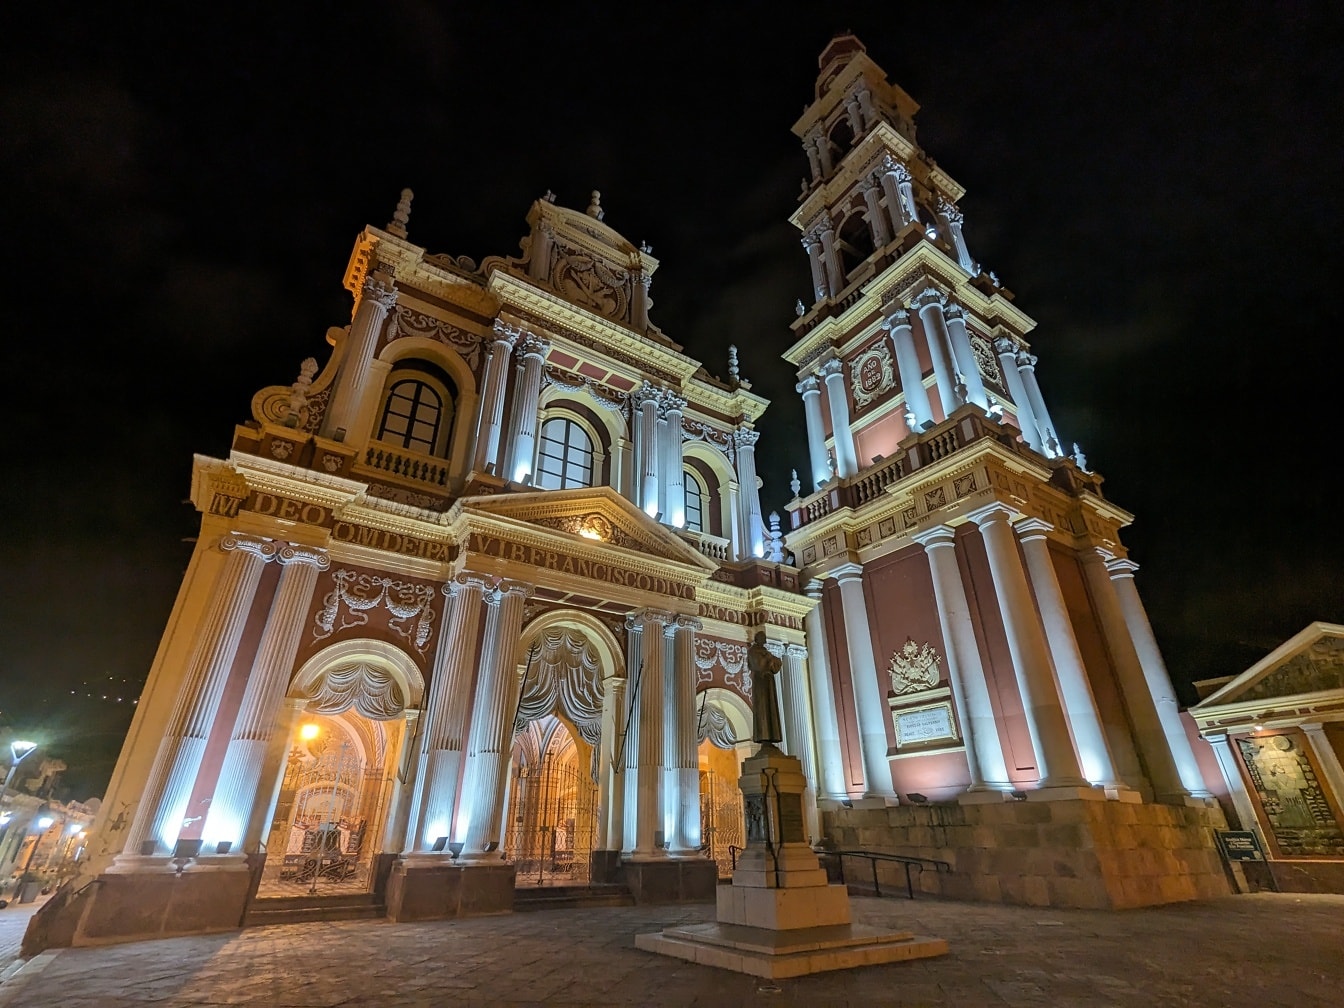 Church of San Francisco i byen Salta i Argentina om natten med en statue på pladsen foran den